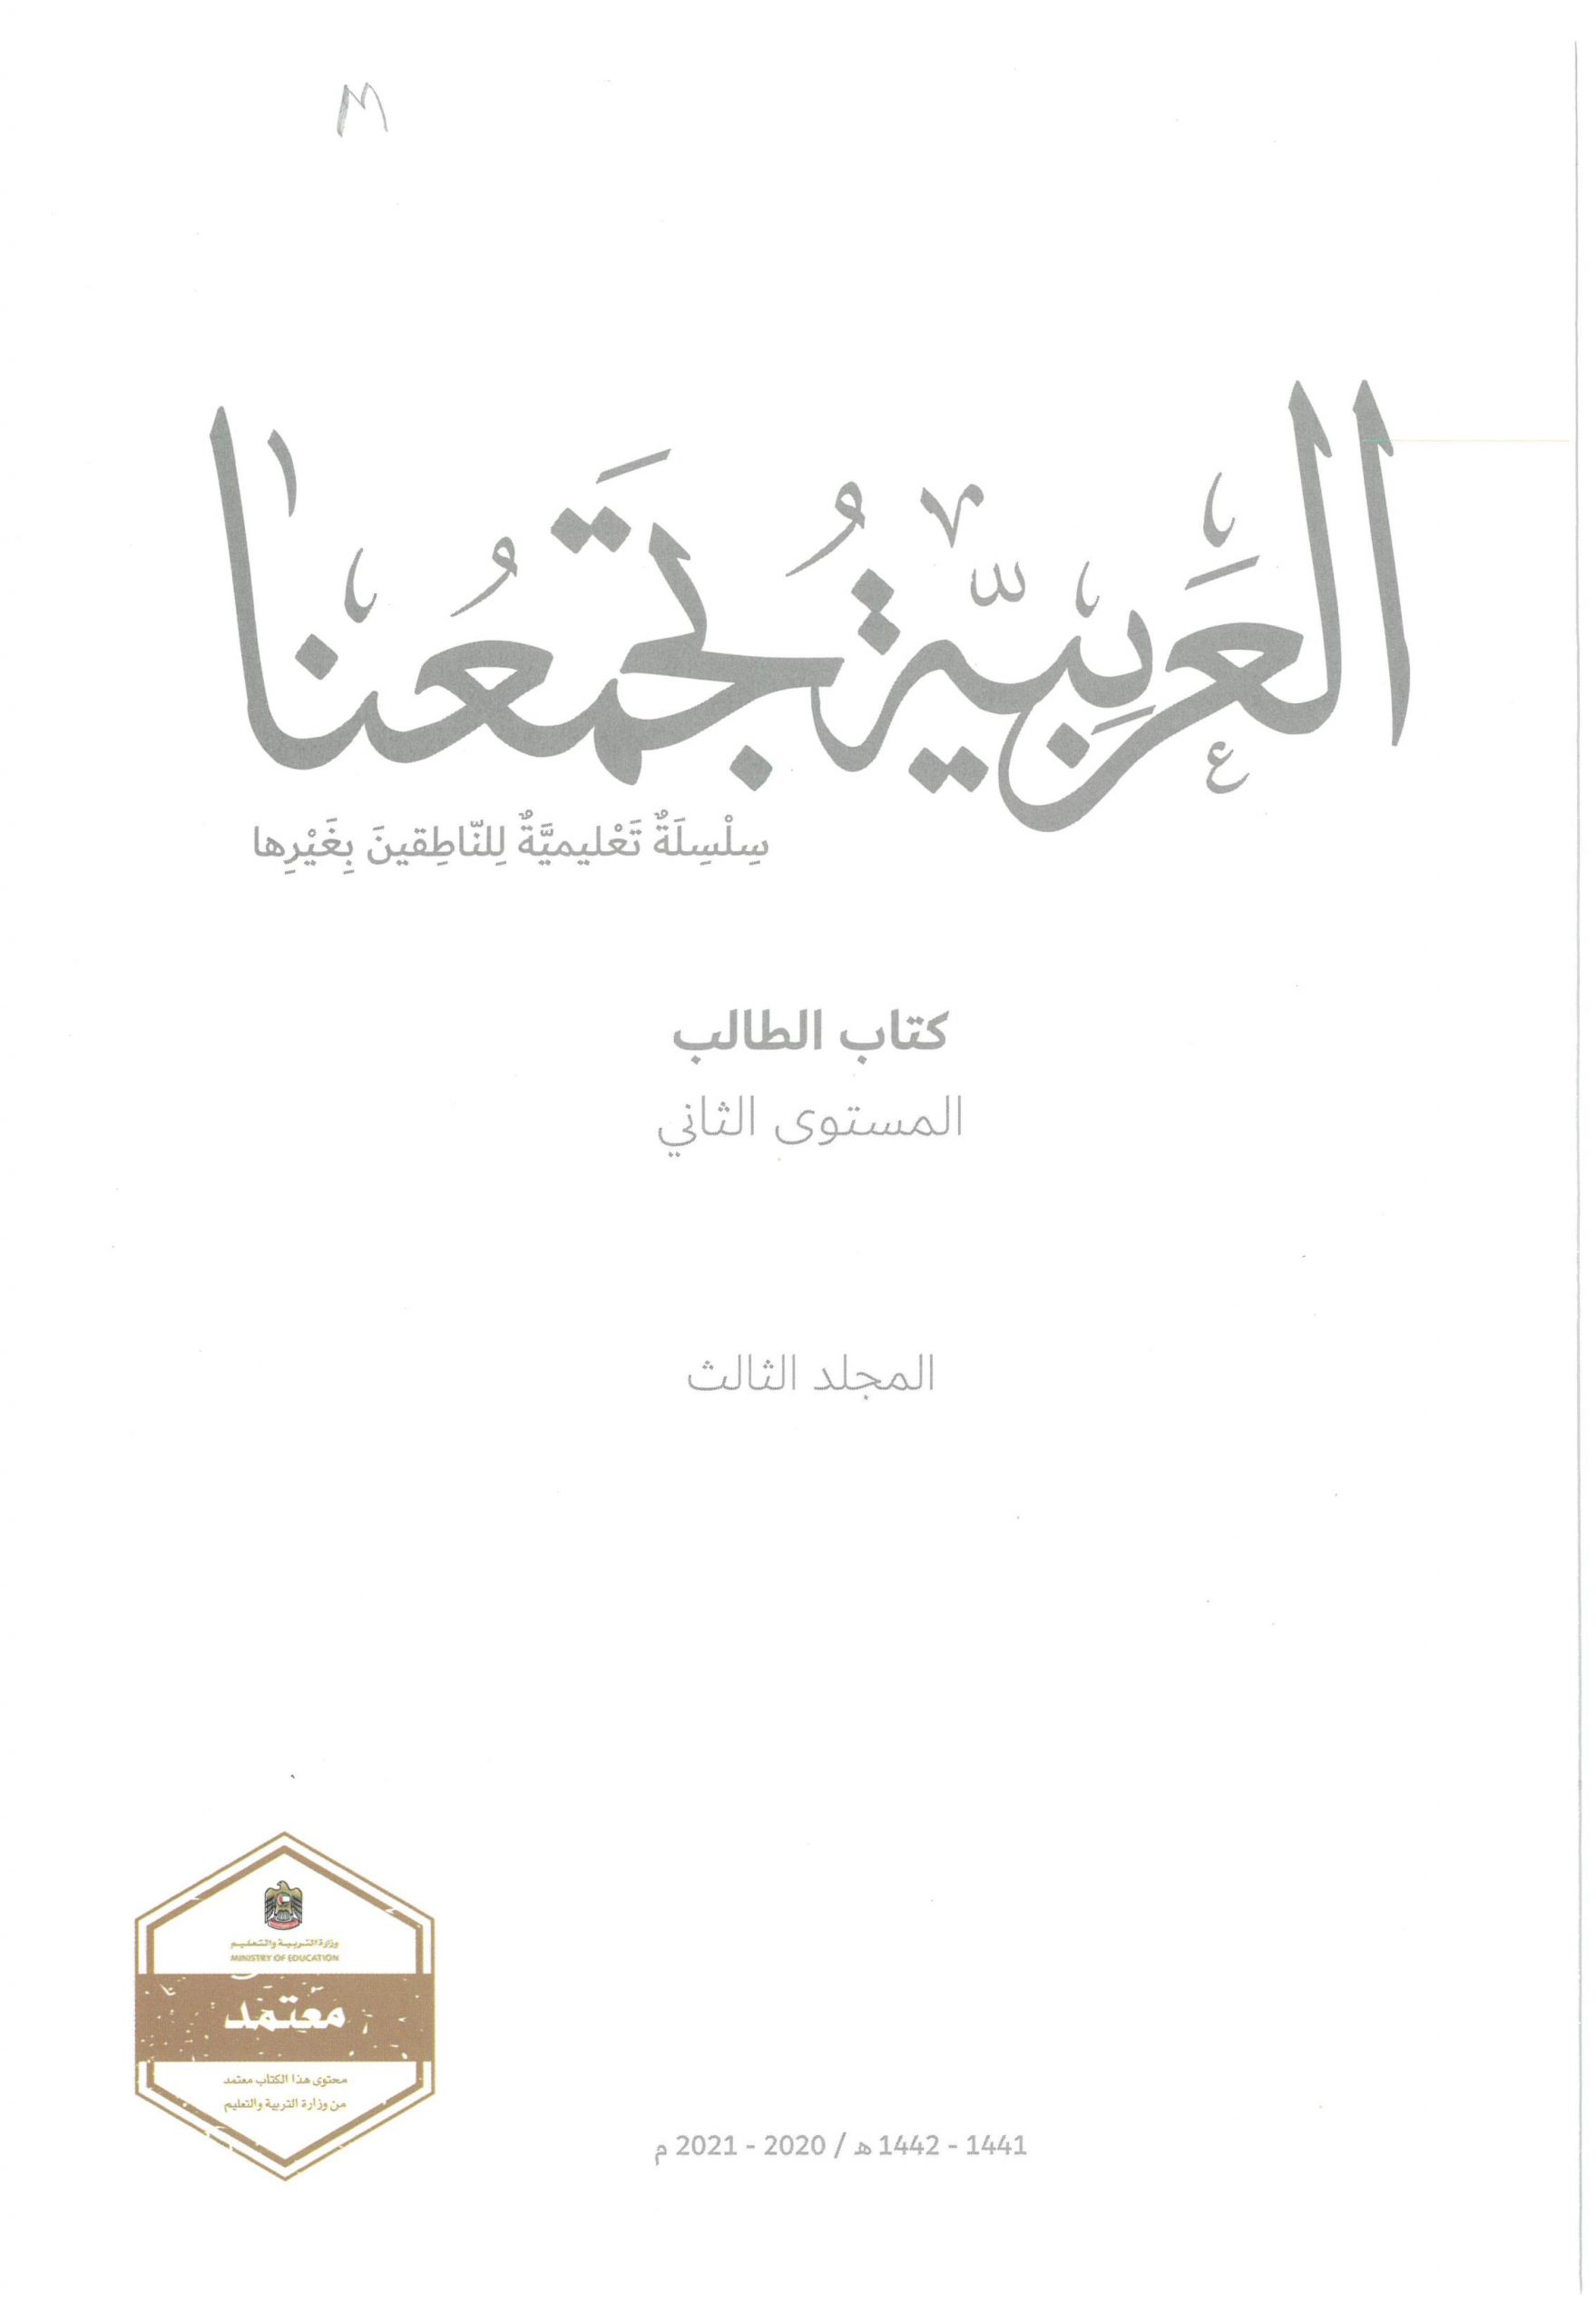 كتاب الطالب لغير الناطقين بها الفصل الدراسي الثالث 2020-2021 الصف الثاني مادة اللغة العربية 